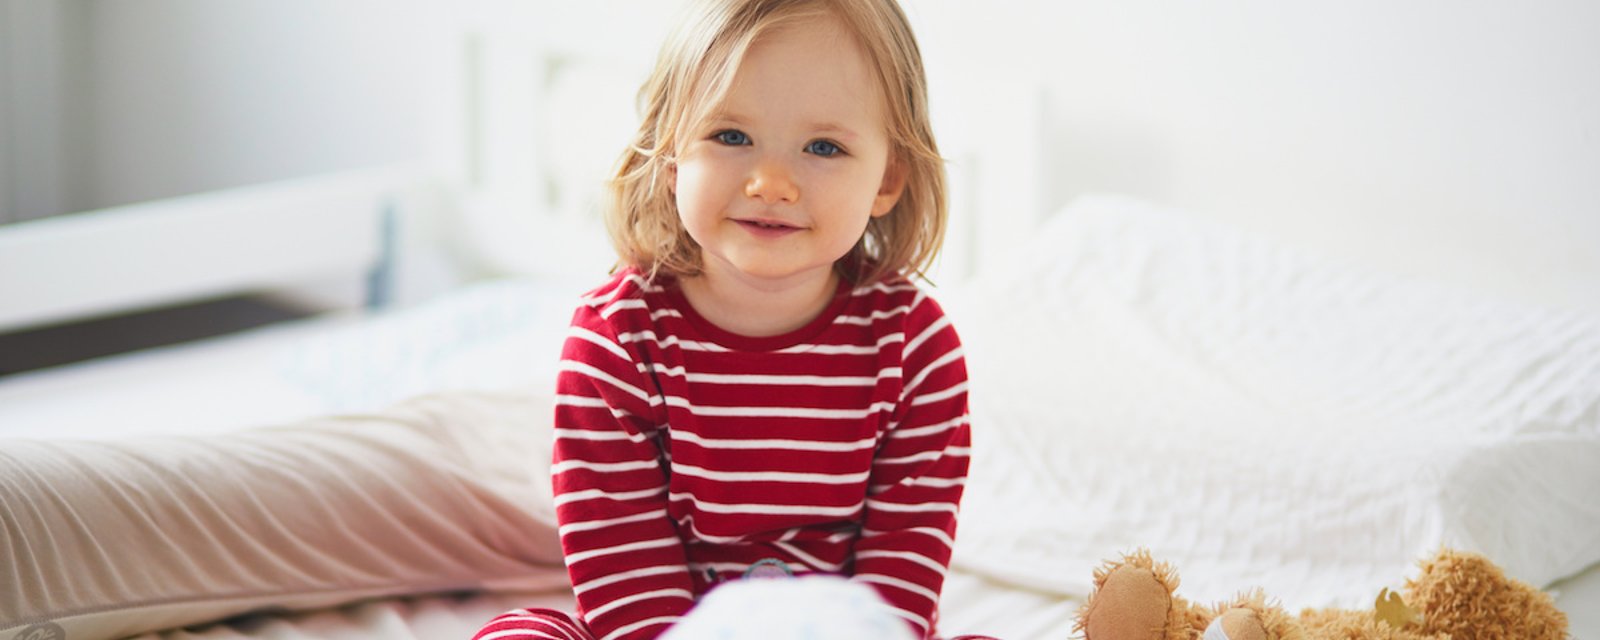 À quelle fréquence faut-il laver le pyjama d’un enfant?